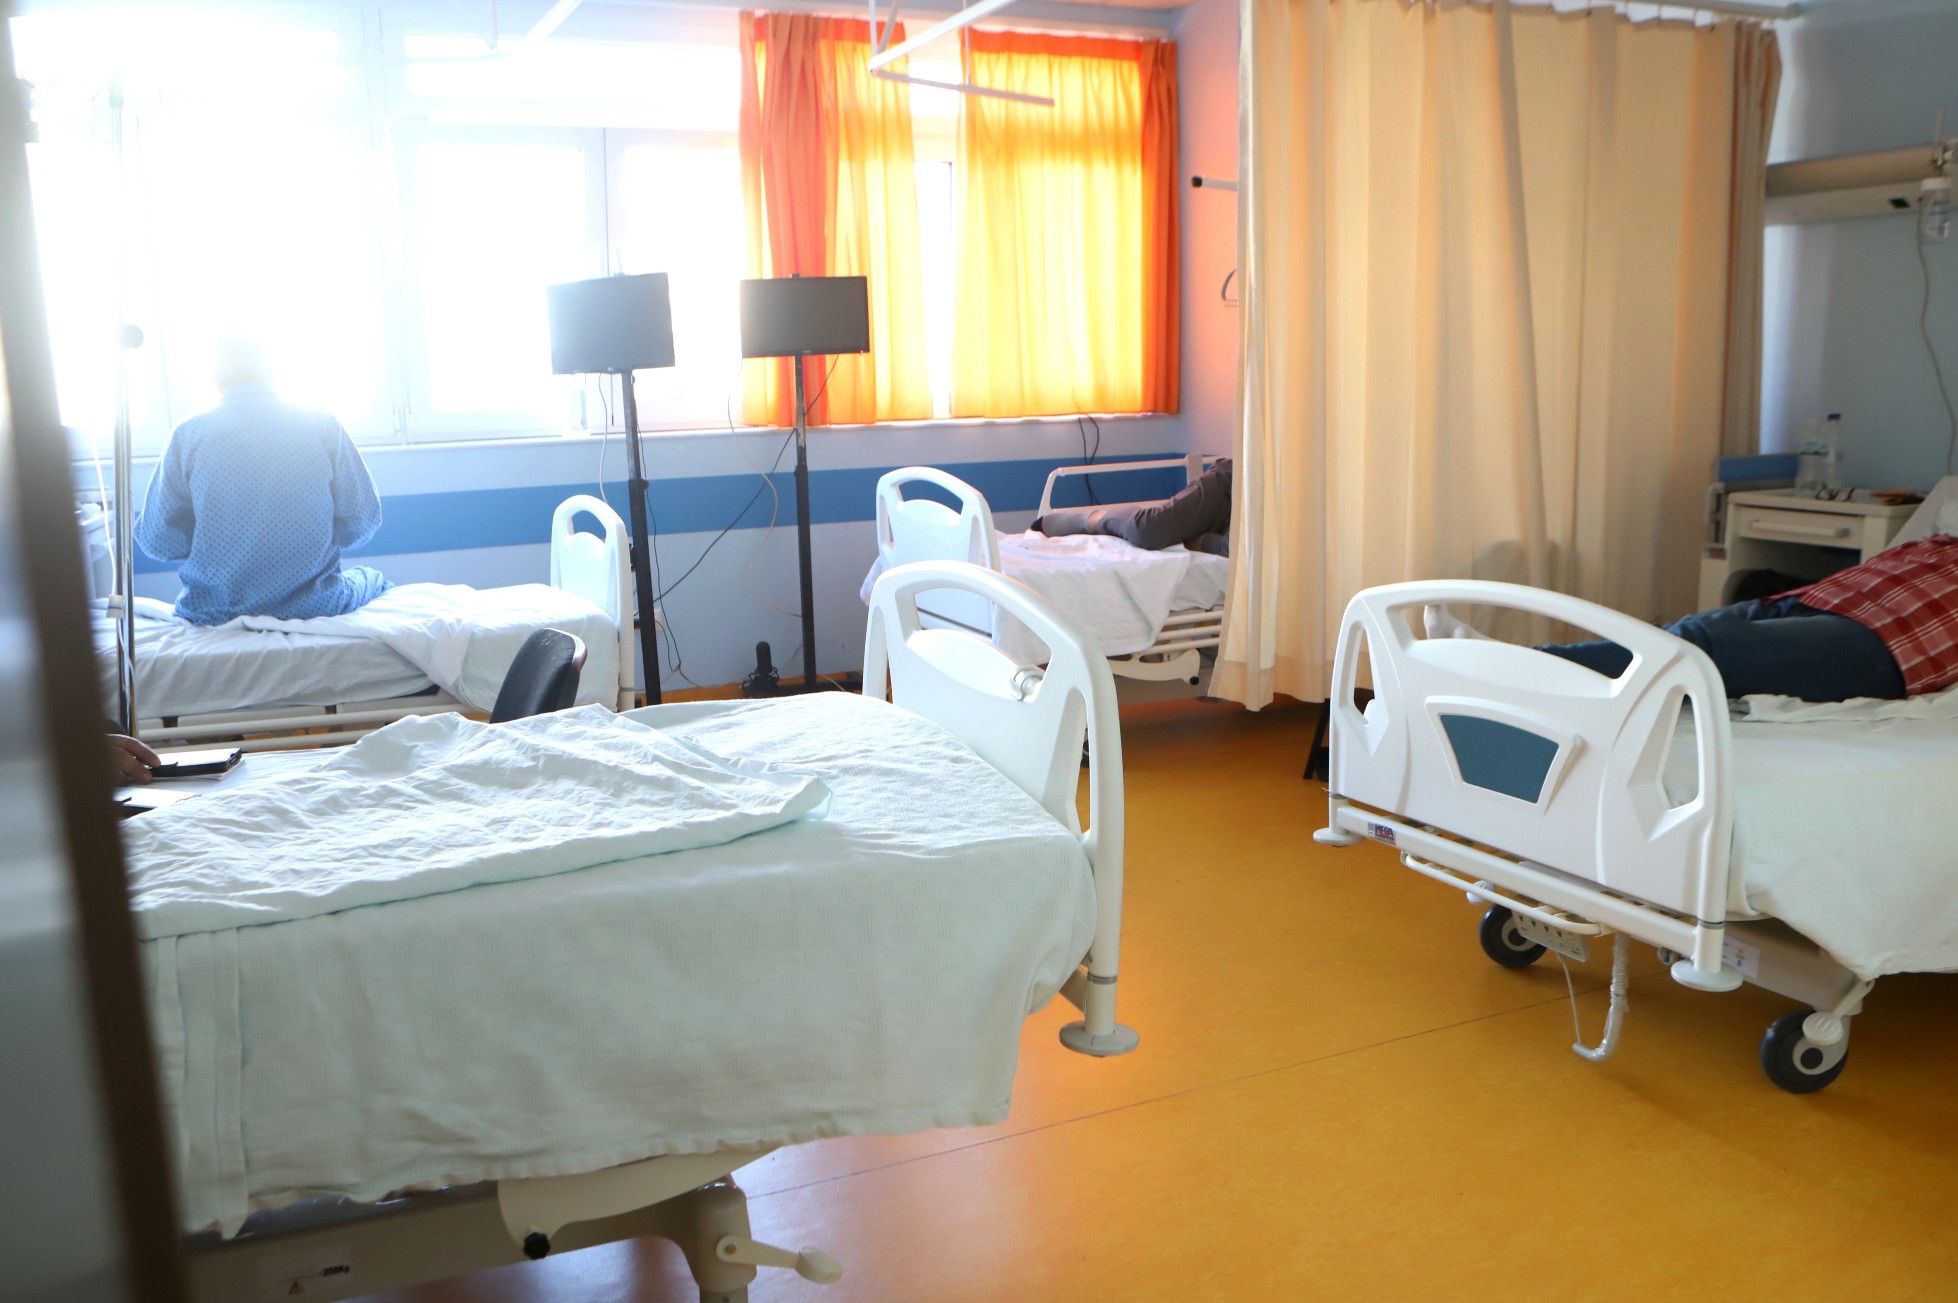 Θεσσαλονίκη: Εισαγγελική έρευνα για την περιπέτεια του 6χρονου που περιέφεραν από νοσοκομείο σε νοσοκομείο ψάχνοντας για αξονικό τομογράφο